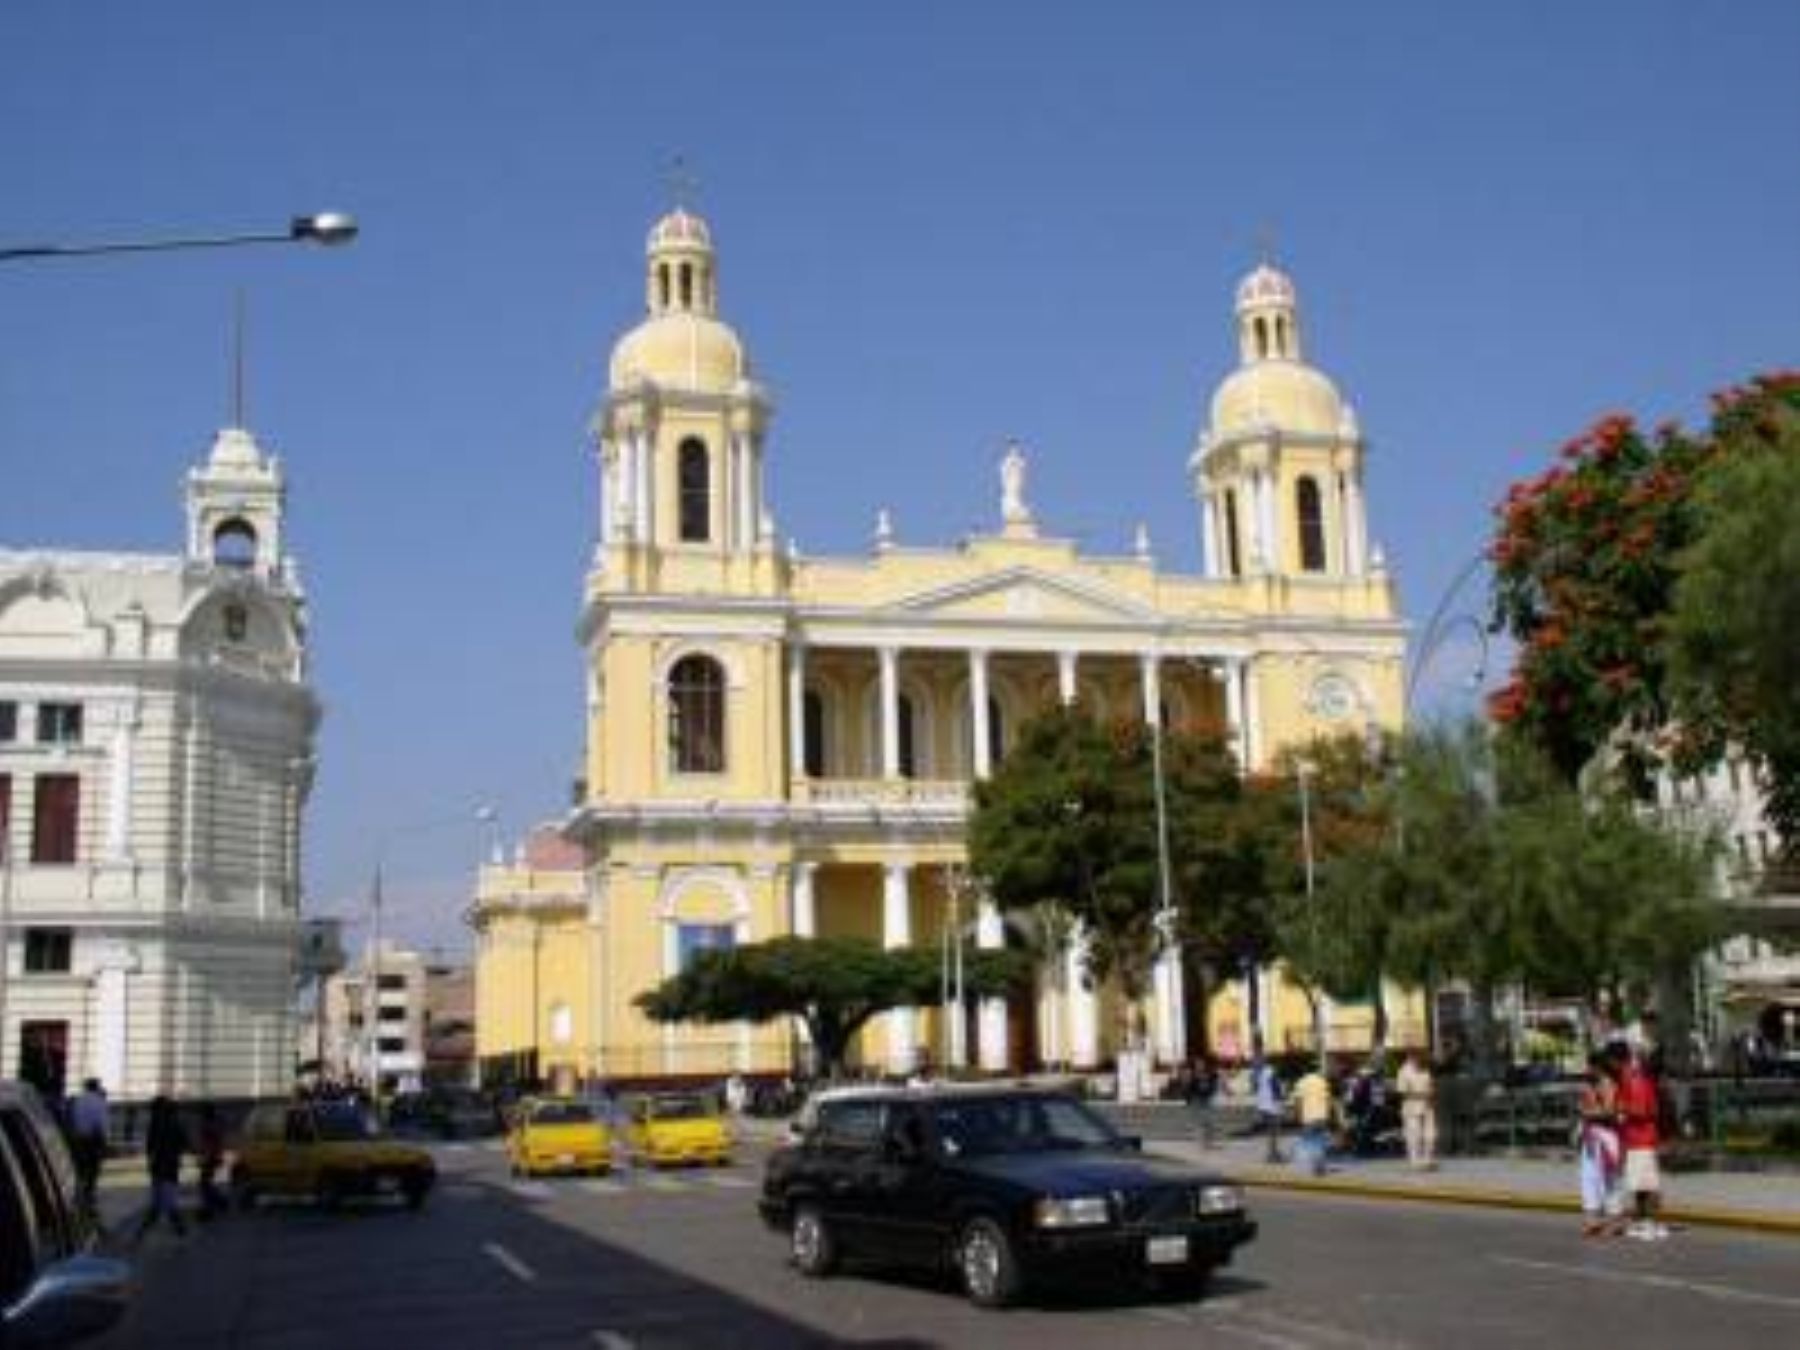 Chiclayo, conocida también como la "Ciudad de la Amistad", gracias al carácter hospitalario y servicial de sus habitantes, alberga predios de gran belleza arquitectónica como su catedral. INTERNET/Medios